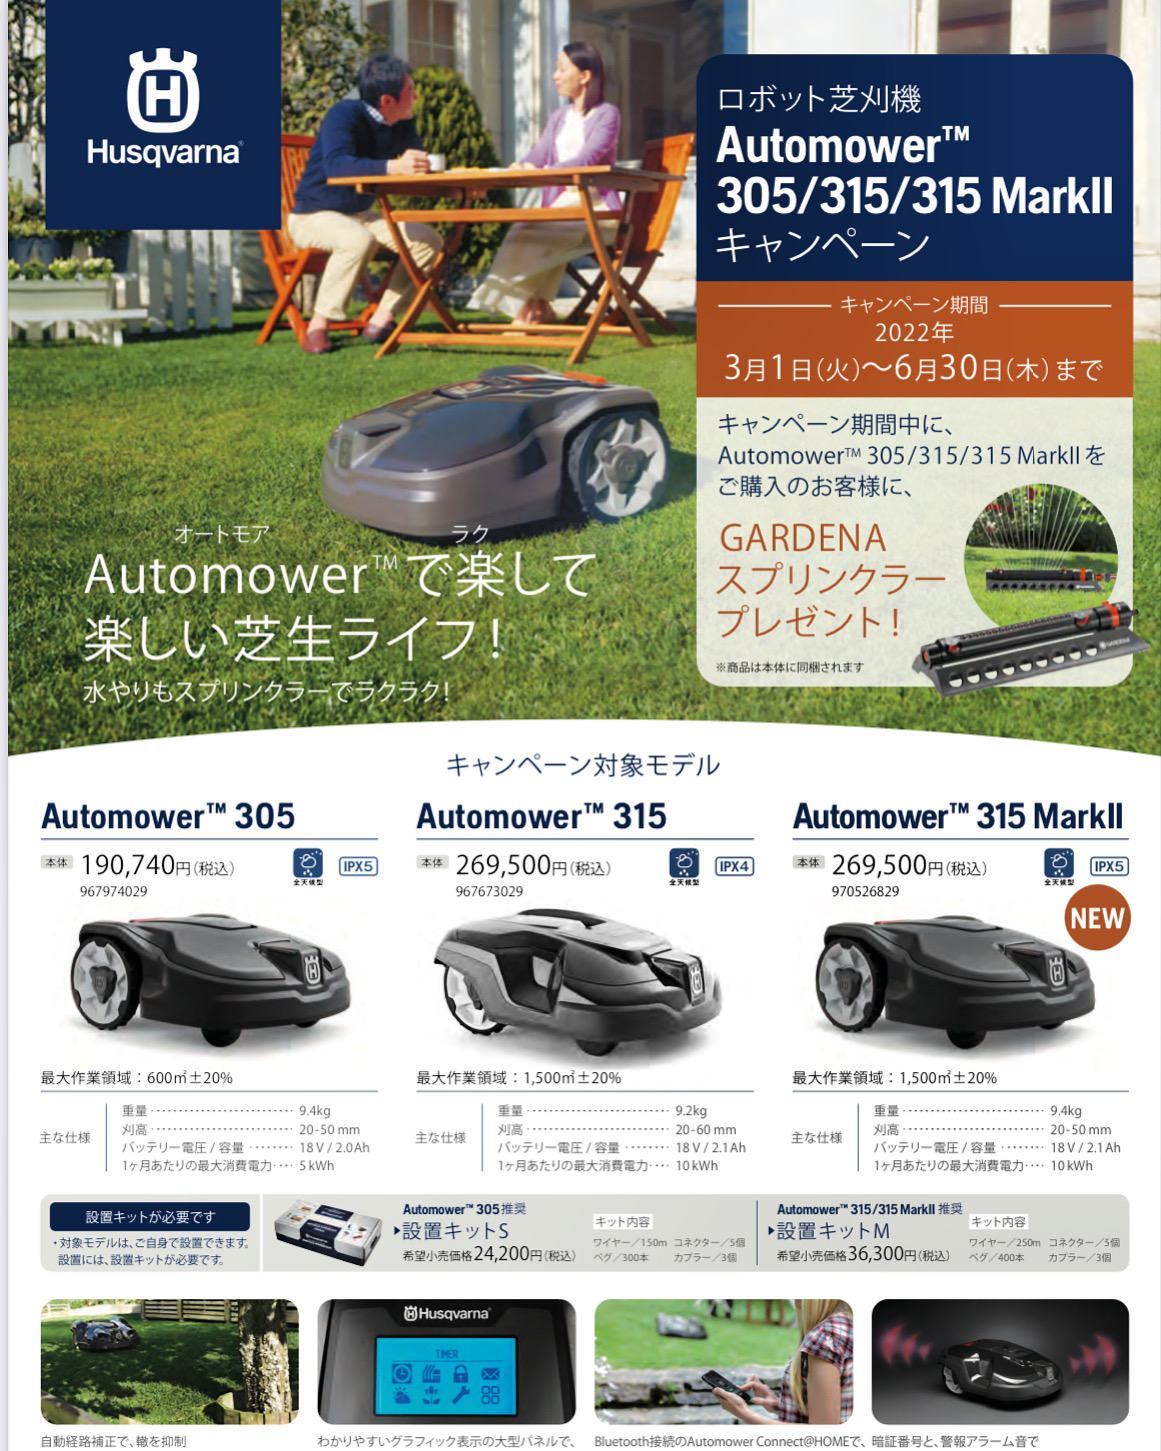 Automower305/315/315 ＭarkⅡキャンペーンのお知らせ | 株式会社 斎藤商会